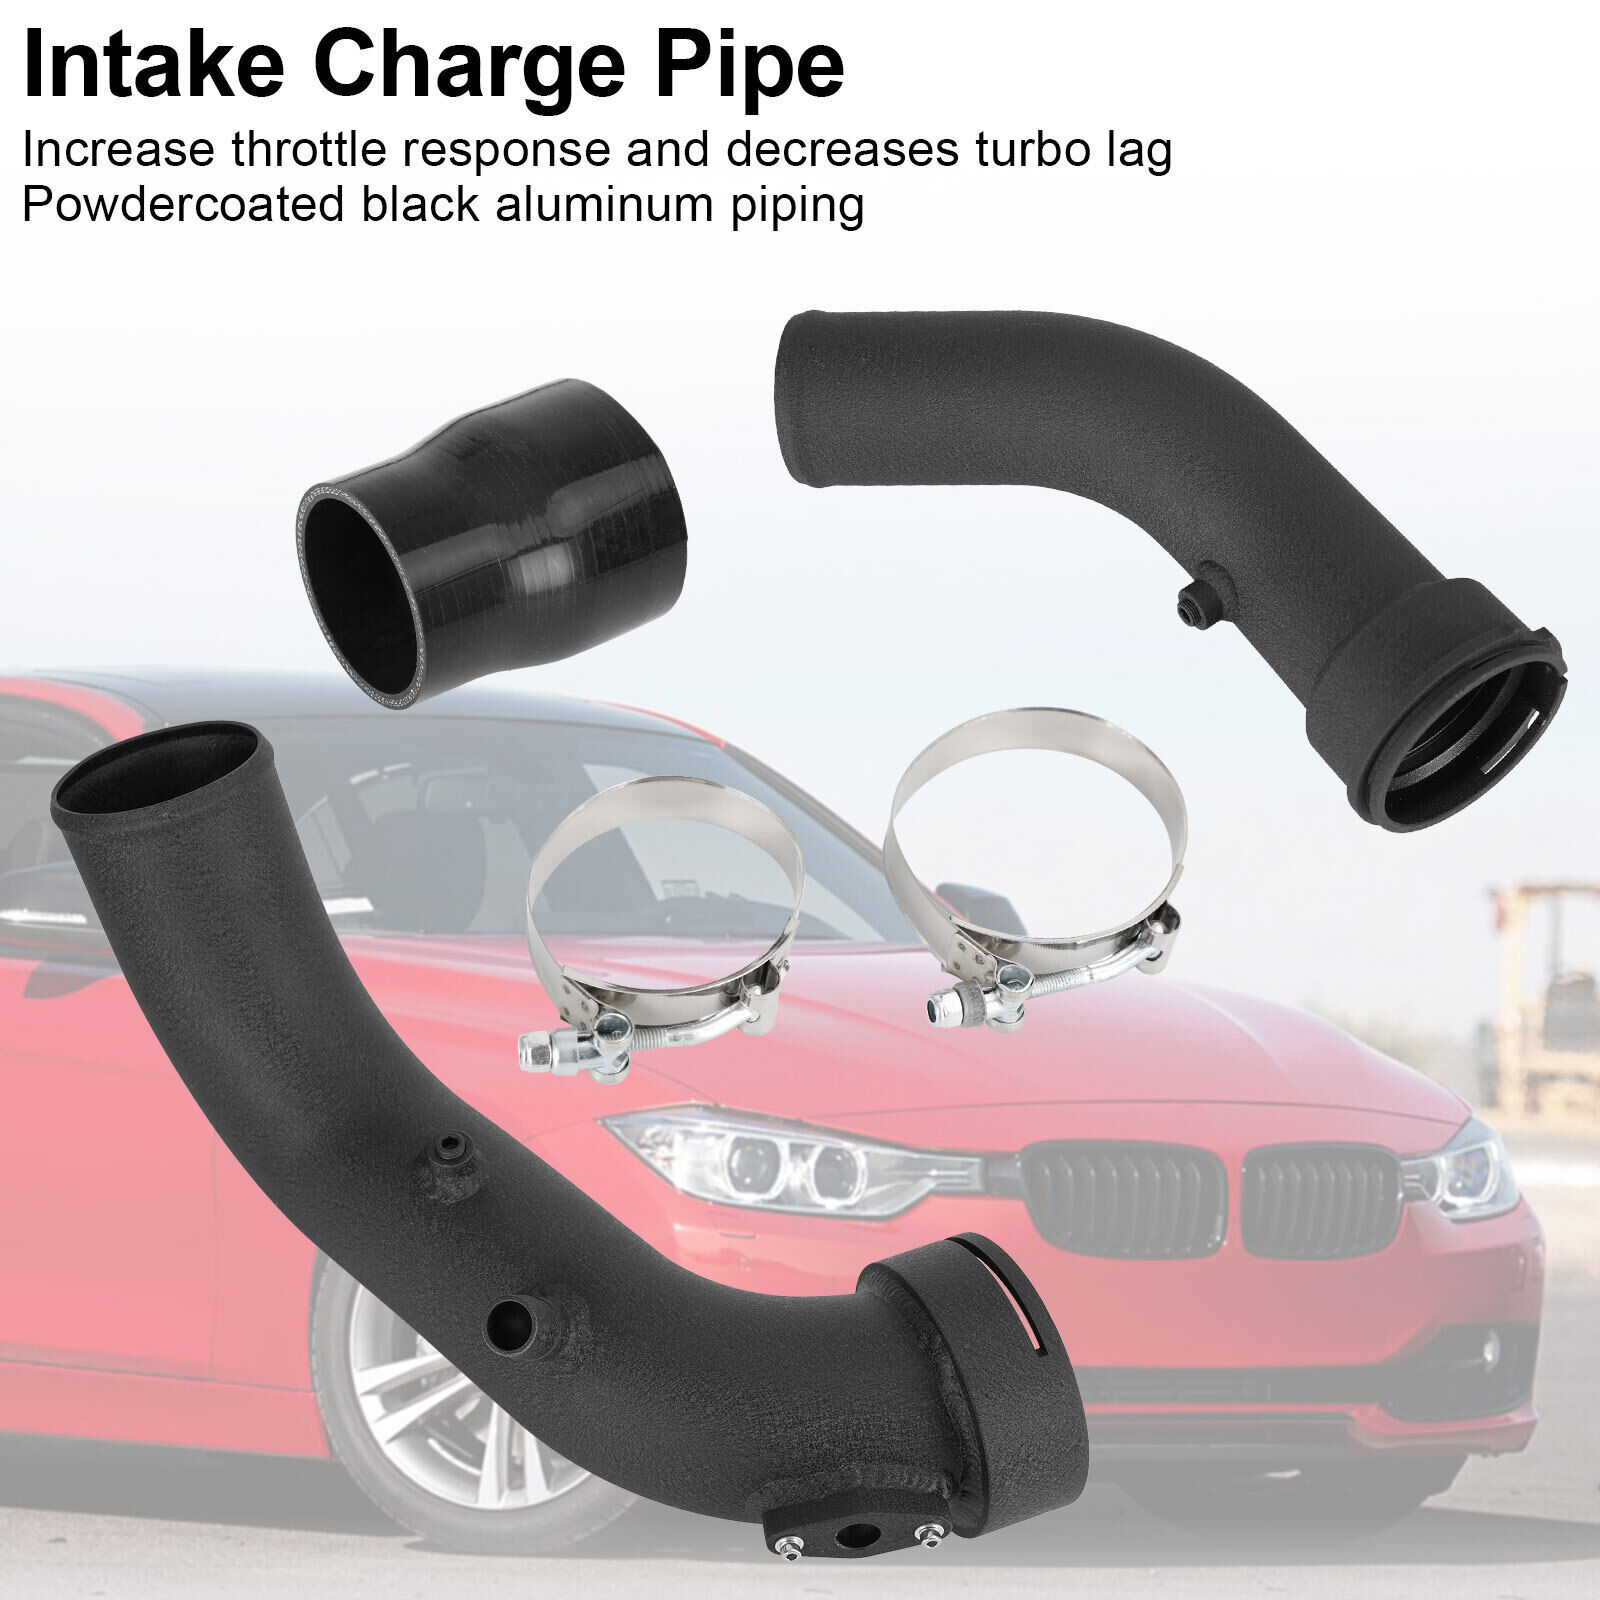 Intake Charge Pipe for BMW M2 M235i 335i 435i N55 F20 F30 RWD 2012-2016